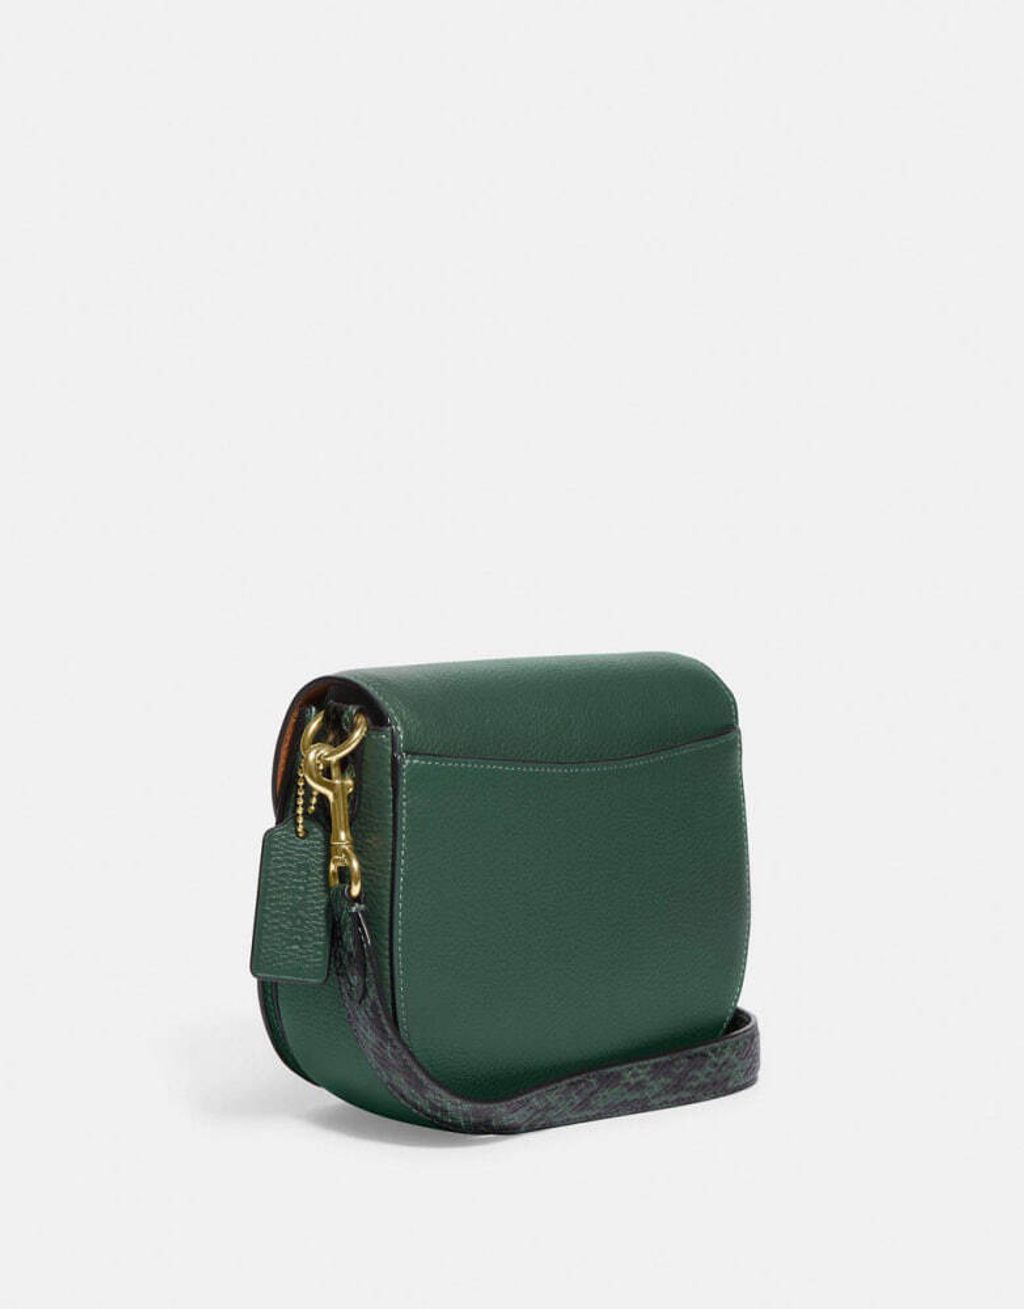 handbag branded coach outlet personalshopper usa malaysia ready stock  COACH MORGAN SADDLE 2